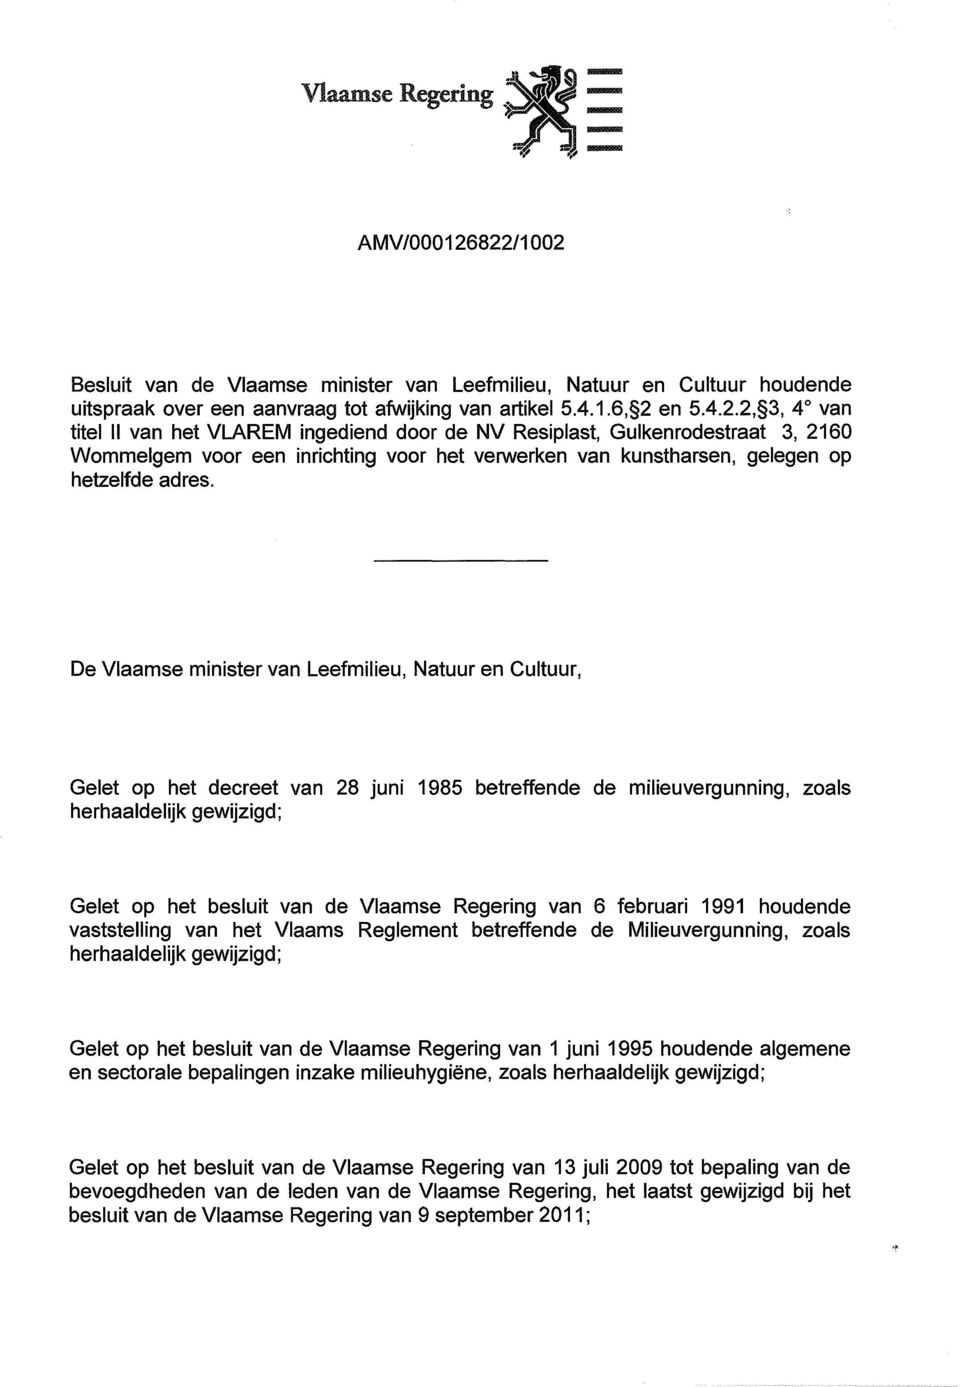 De Vlaamse minister van Leefmilieu, Natuur en Cultuur, Gelet op het decreet van 28 juni 1985 betreffende de milieuvergunning, zoals herhaaldelijk gewijzigd; Gelet op het besluit van de Vlaamse